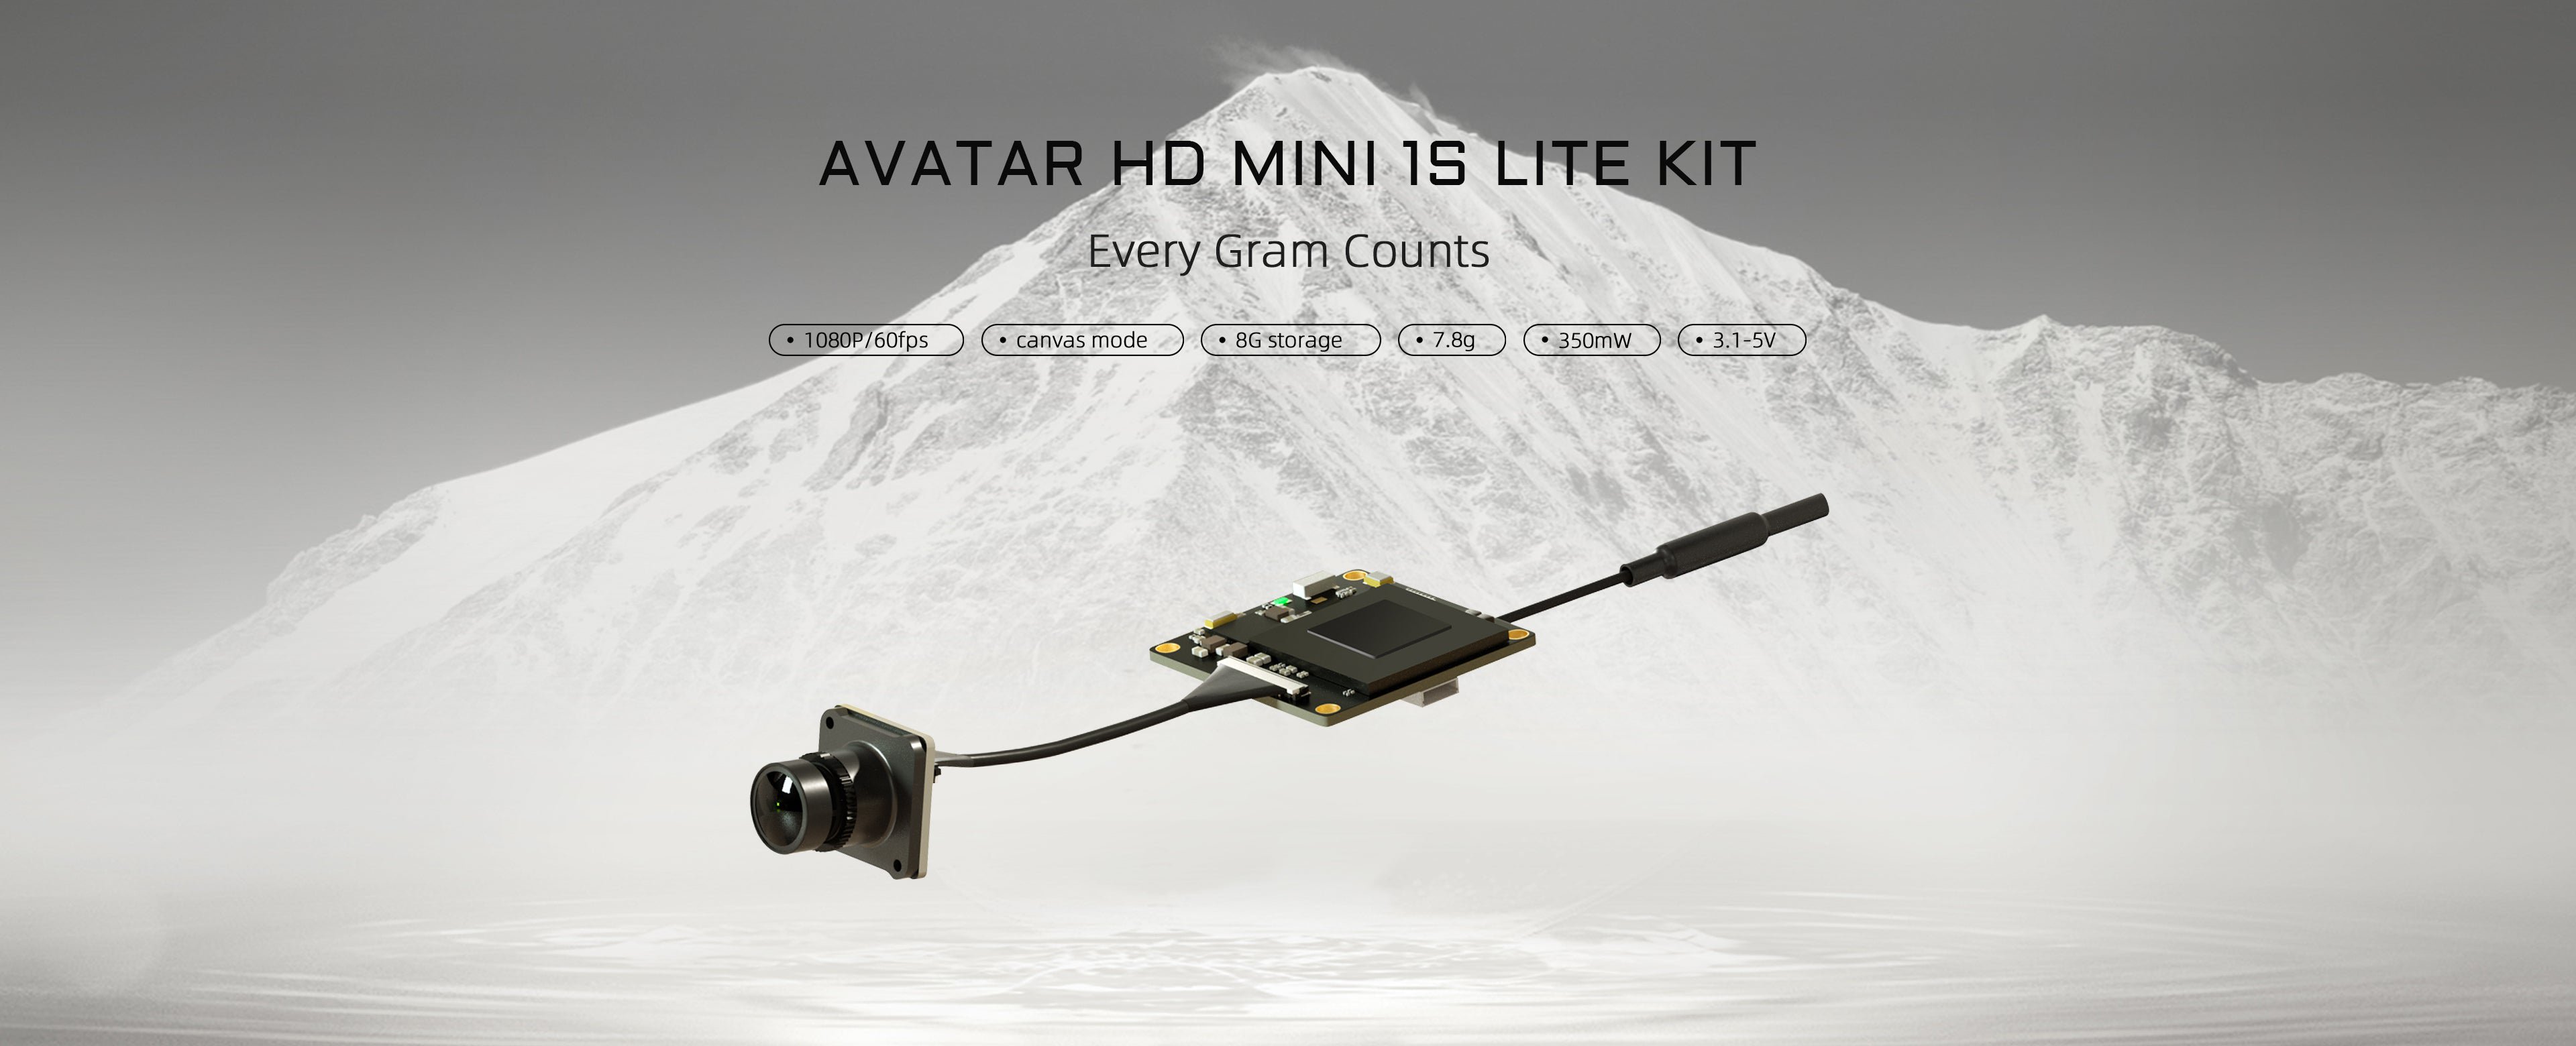 Walksnail Avatar HD Mini 1s Lite Kit